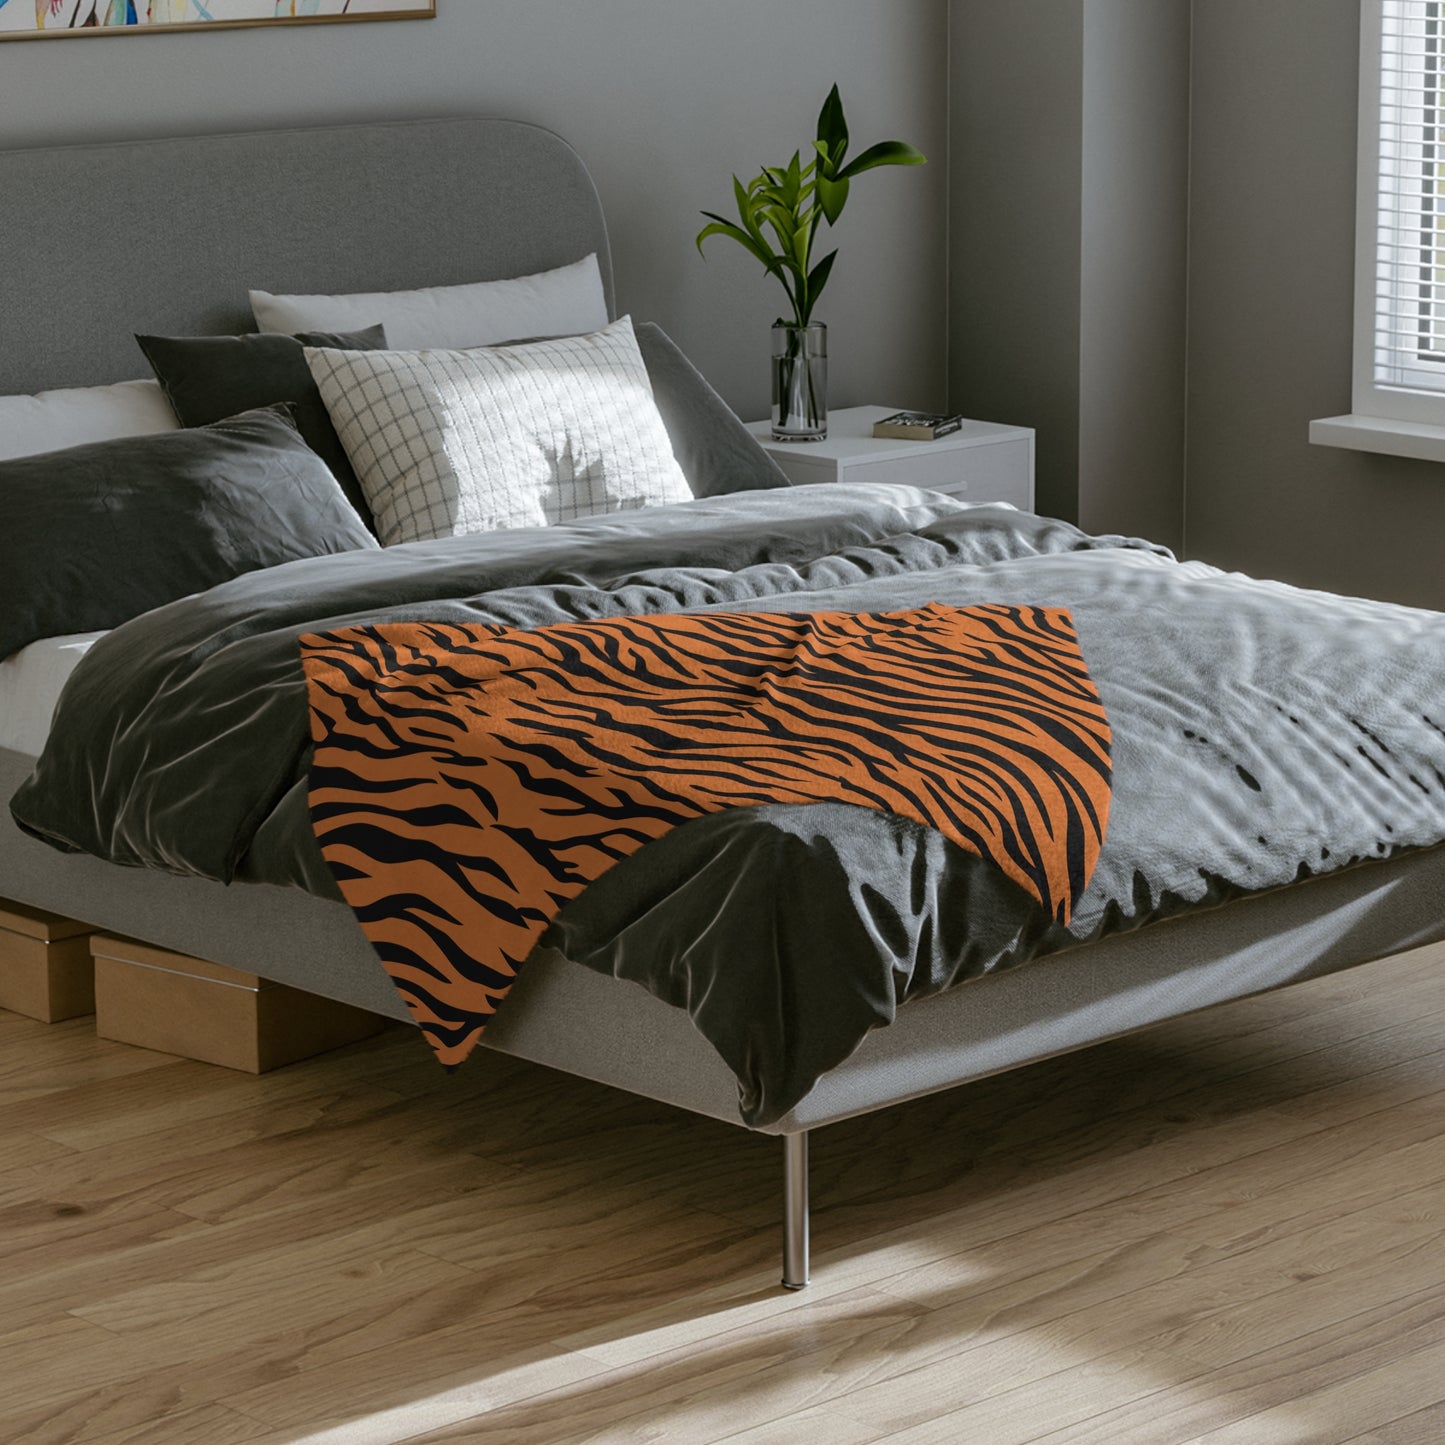 Terrific Tiger Stripe Theme Throw Sofa Bed Blanket Tiger Stripes - Soft Thick Velveteen Minky Throw Blanket